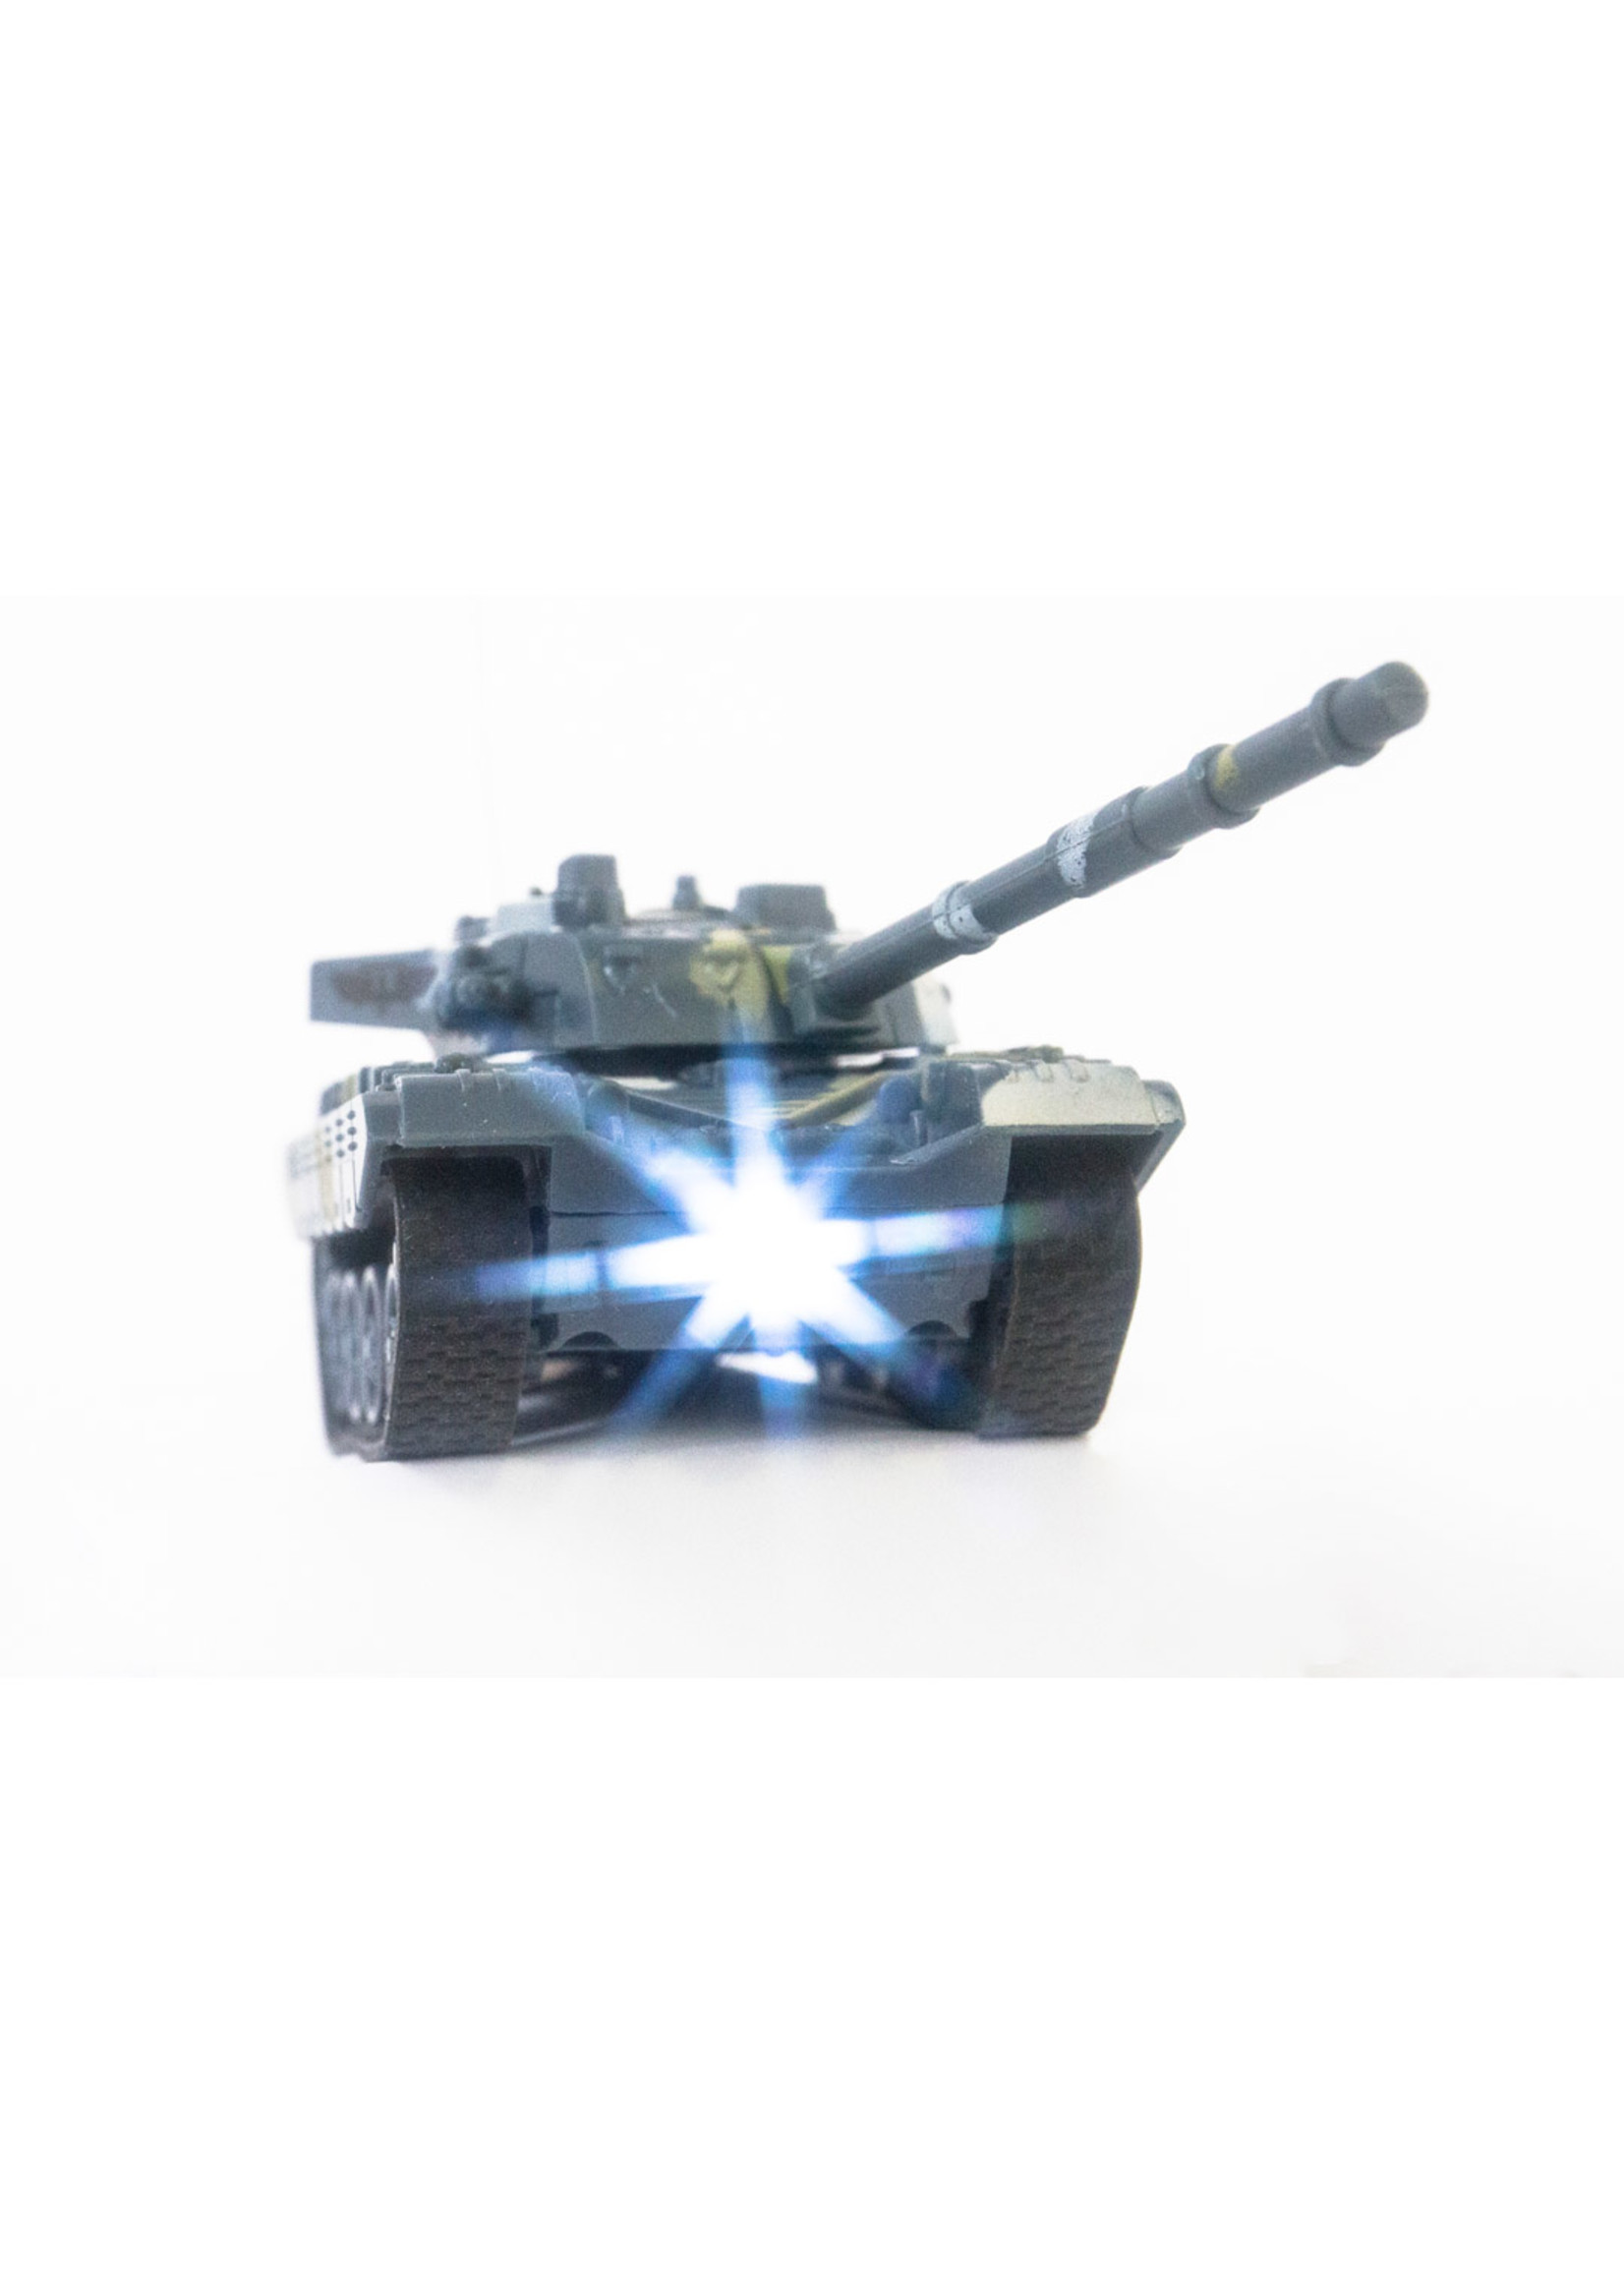 Invento Mini RC Tank